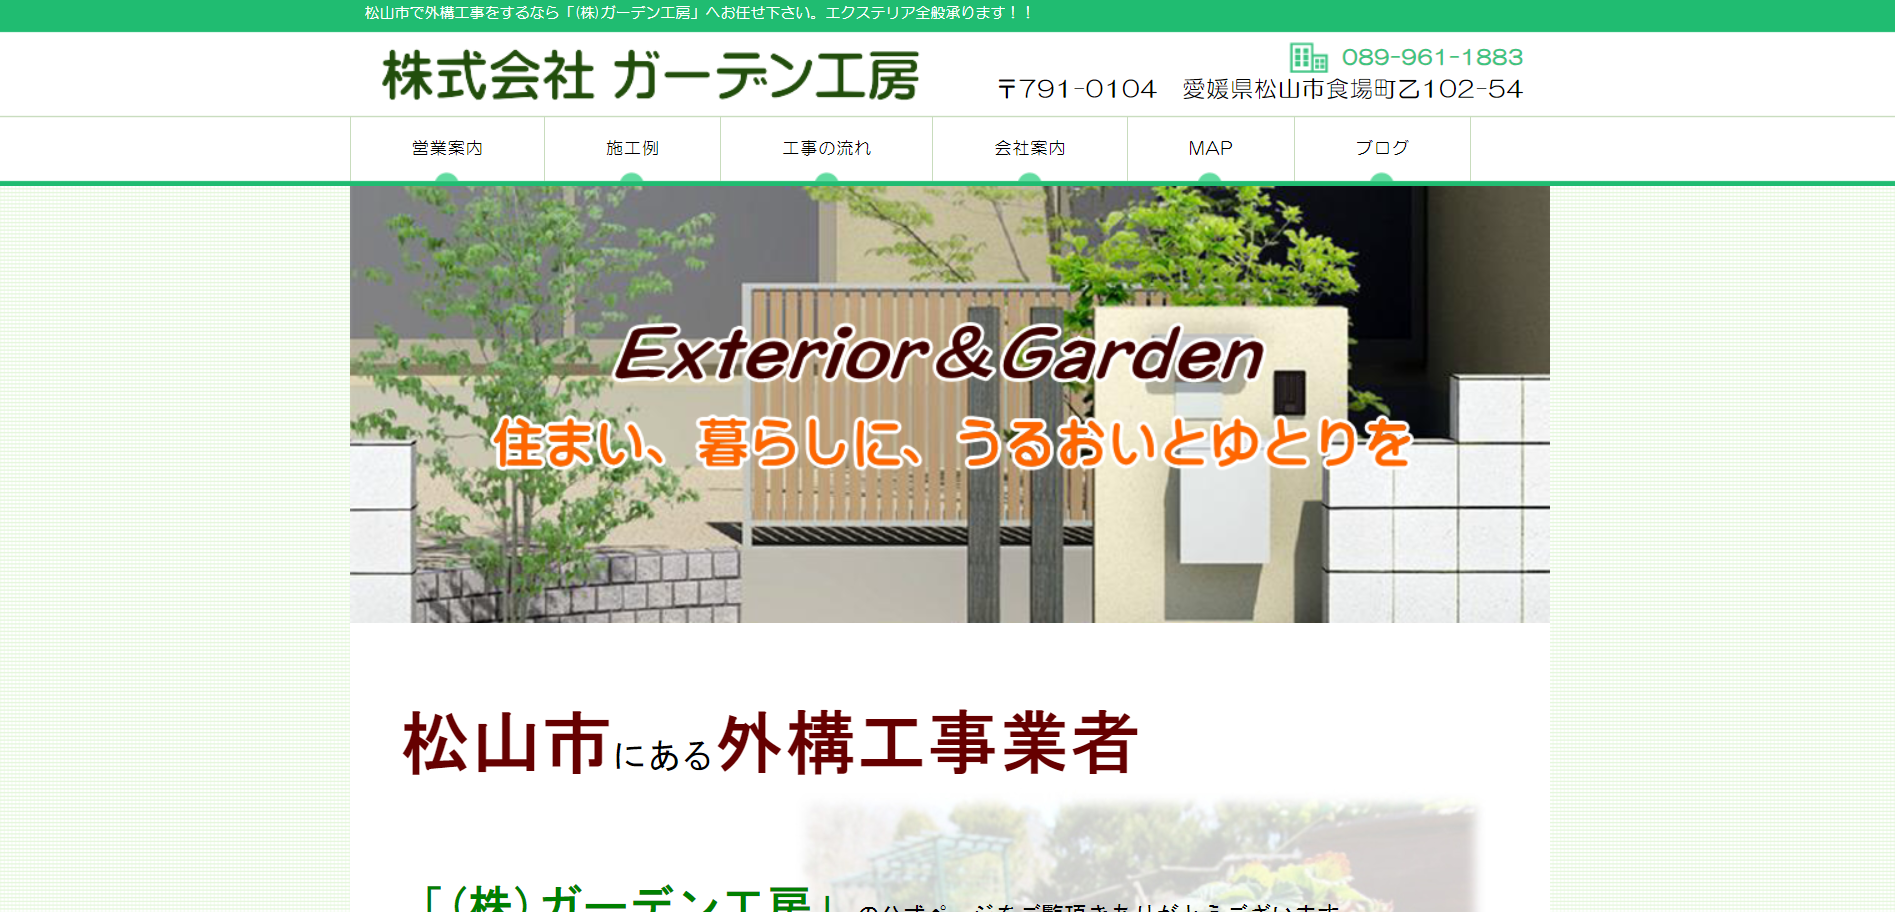 松山市で評判のおすすめ外構業者ランキング 第6位 株式会社 ガーデン工房